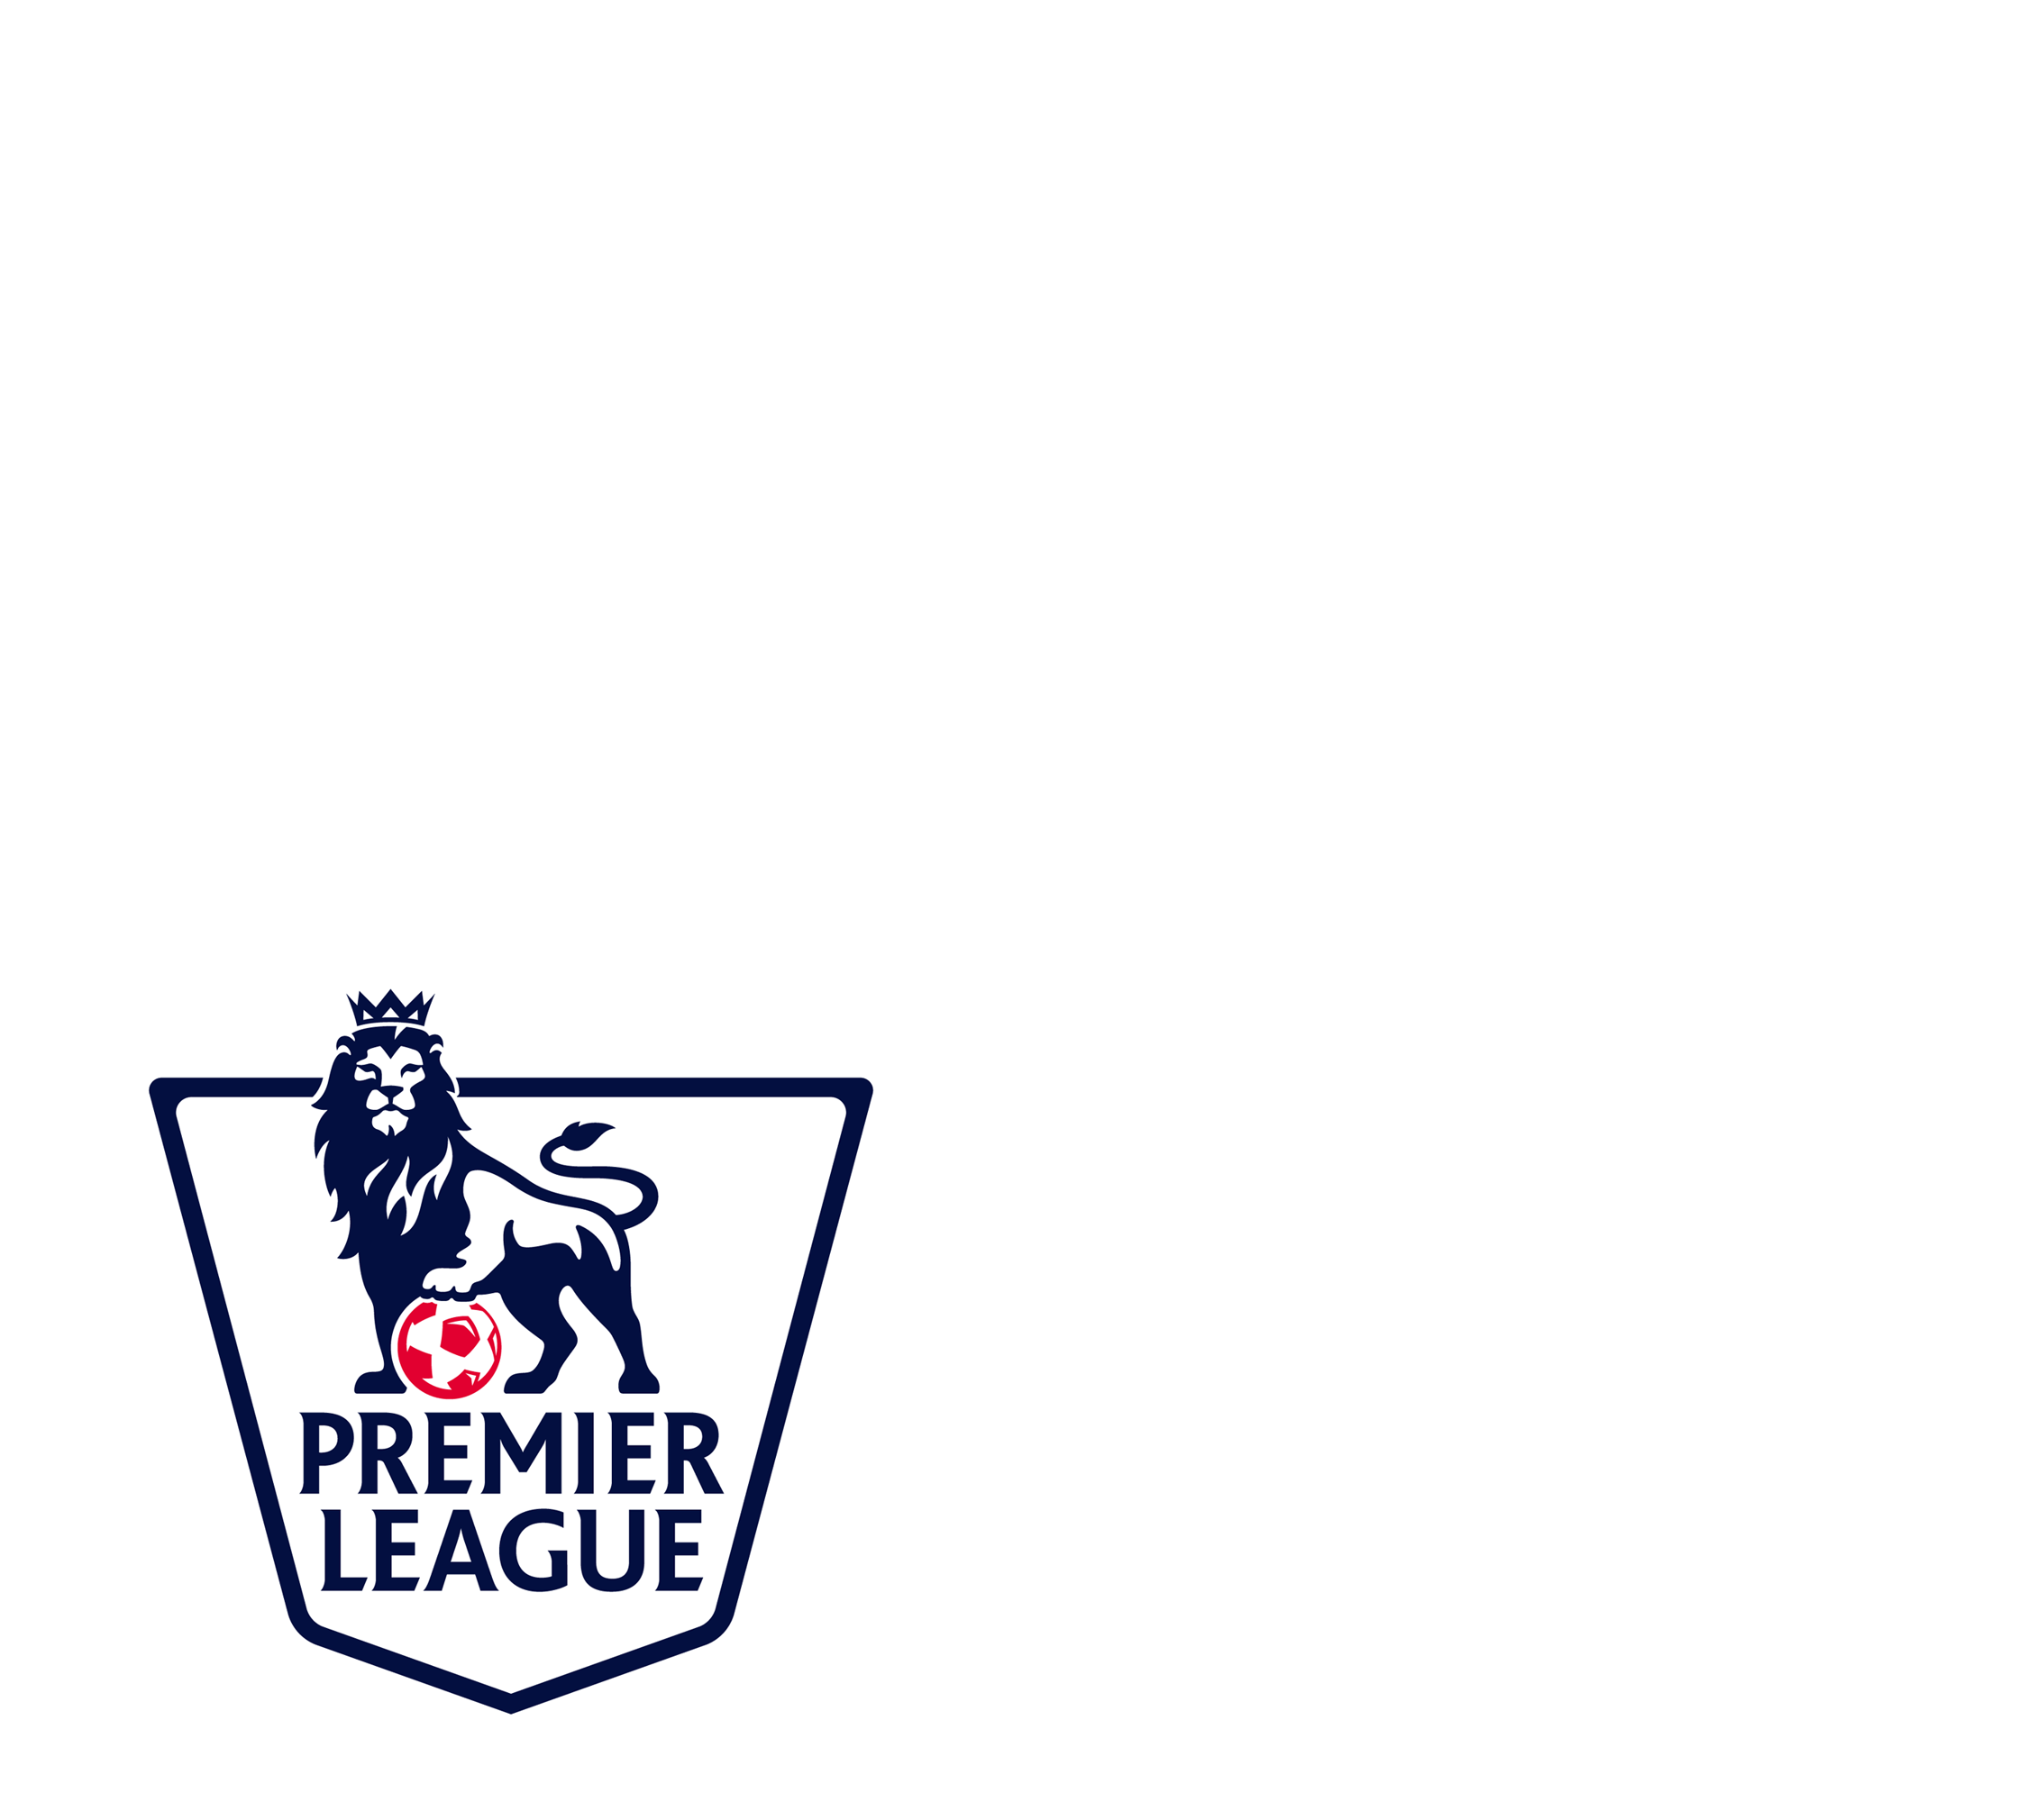 Premier League 2016/17